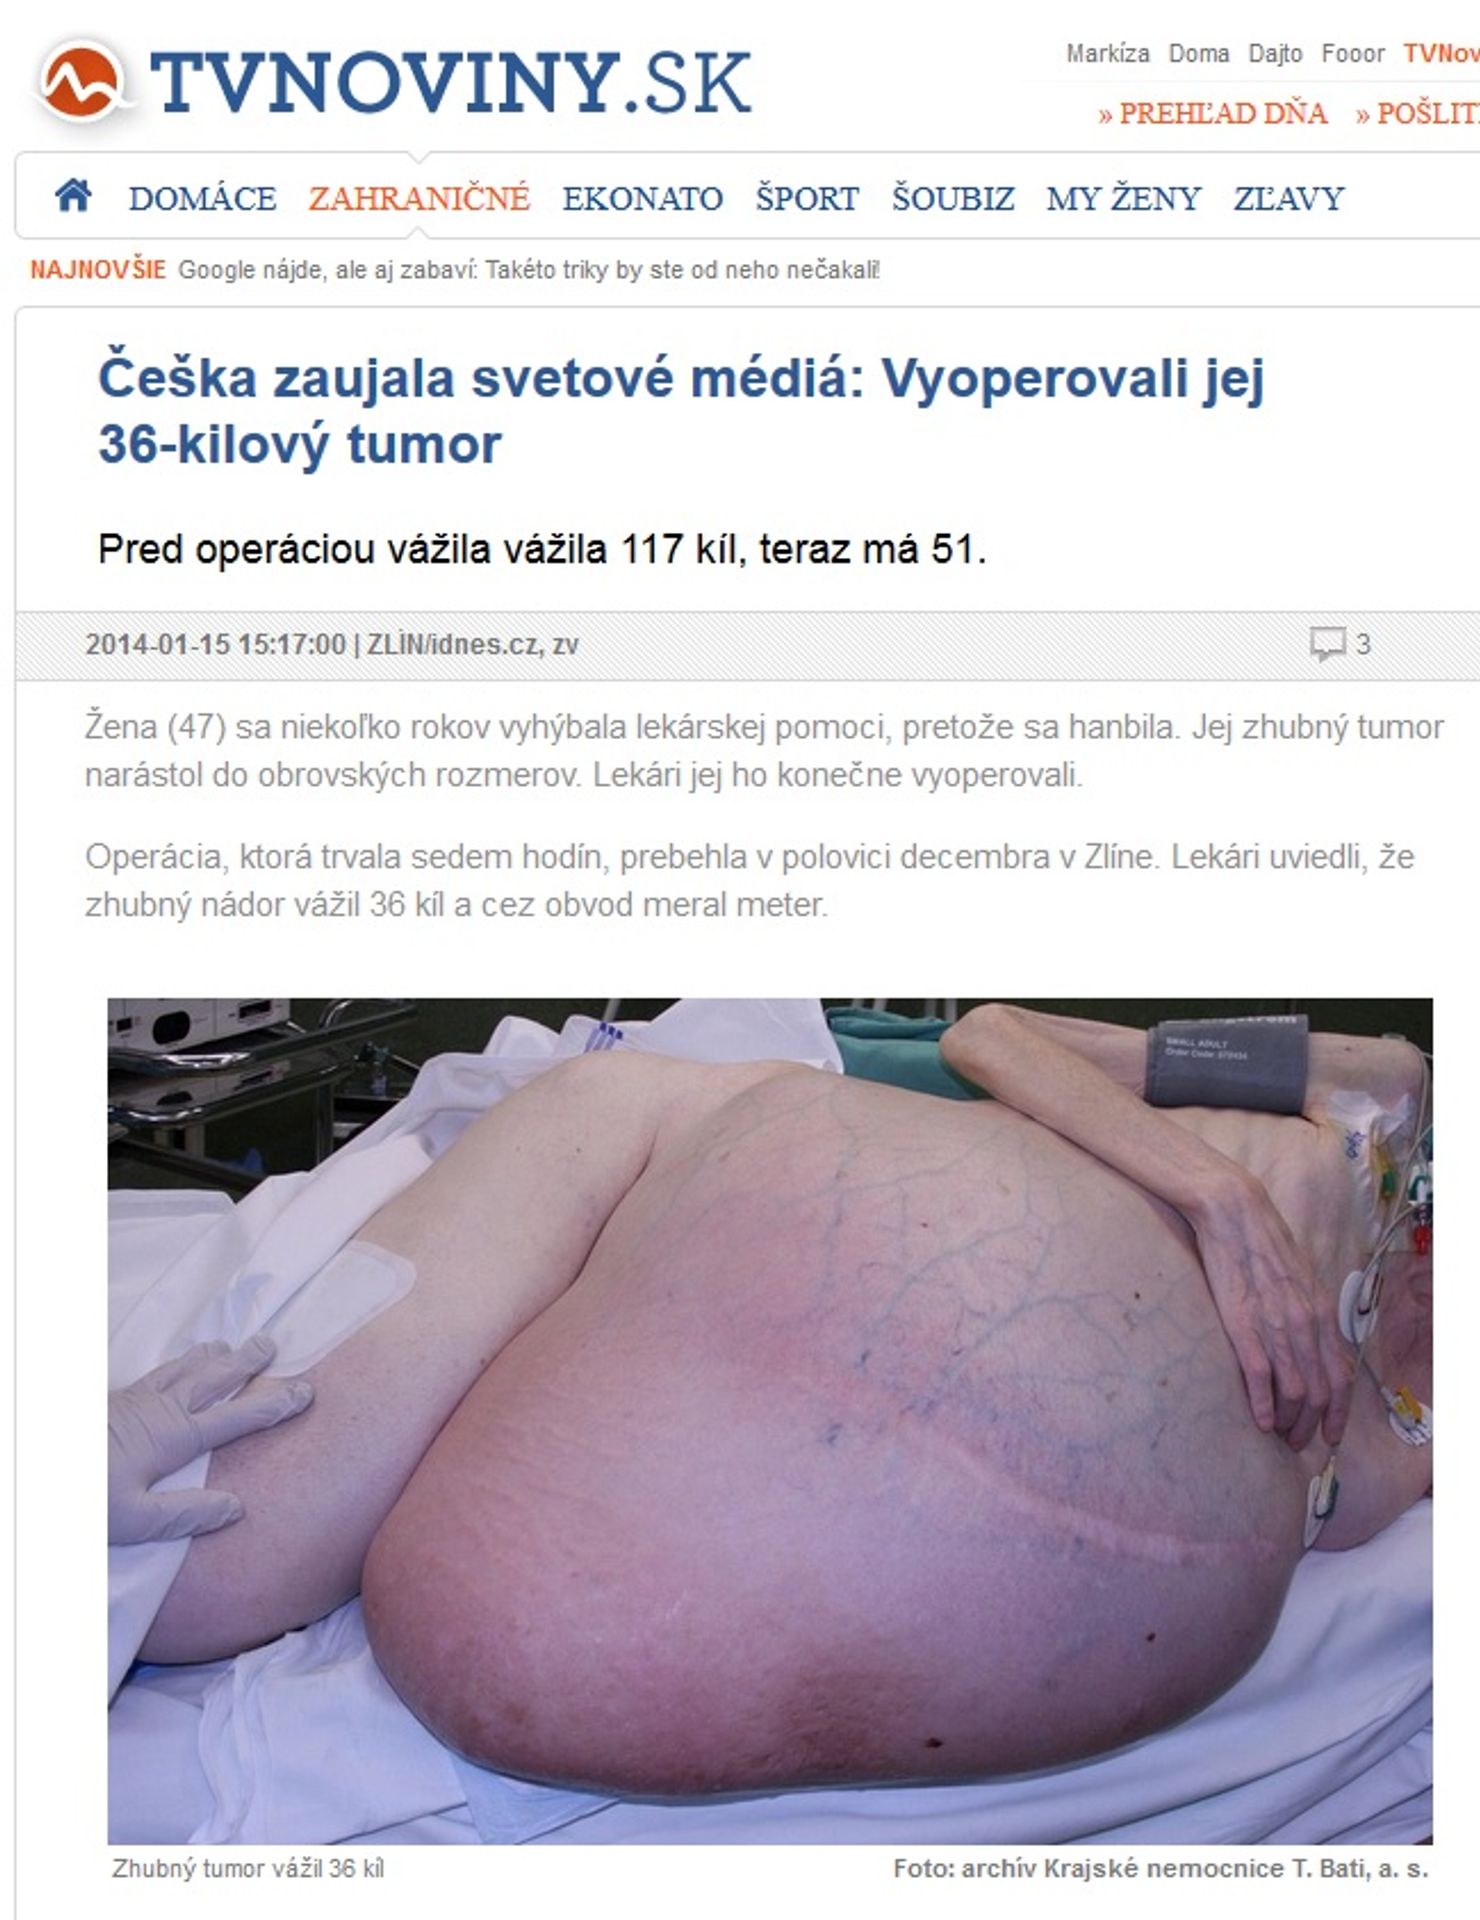 Obří nádor z Česka na TVnoviny.sk - GALERIE: Obří nádor zaujal svět (2/4)